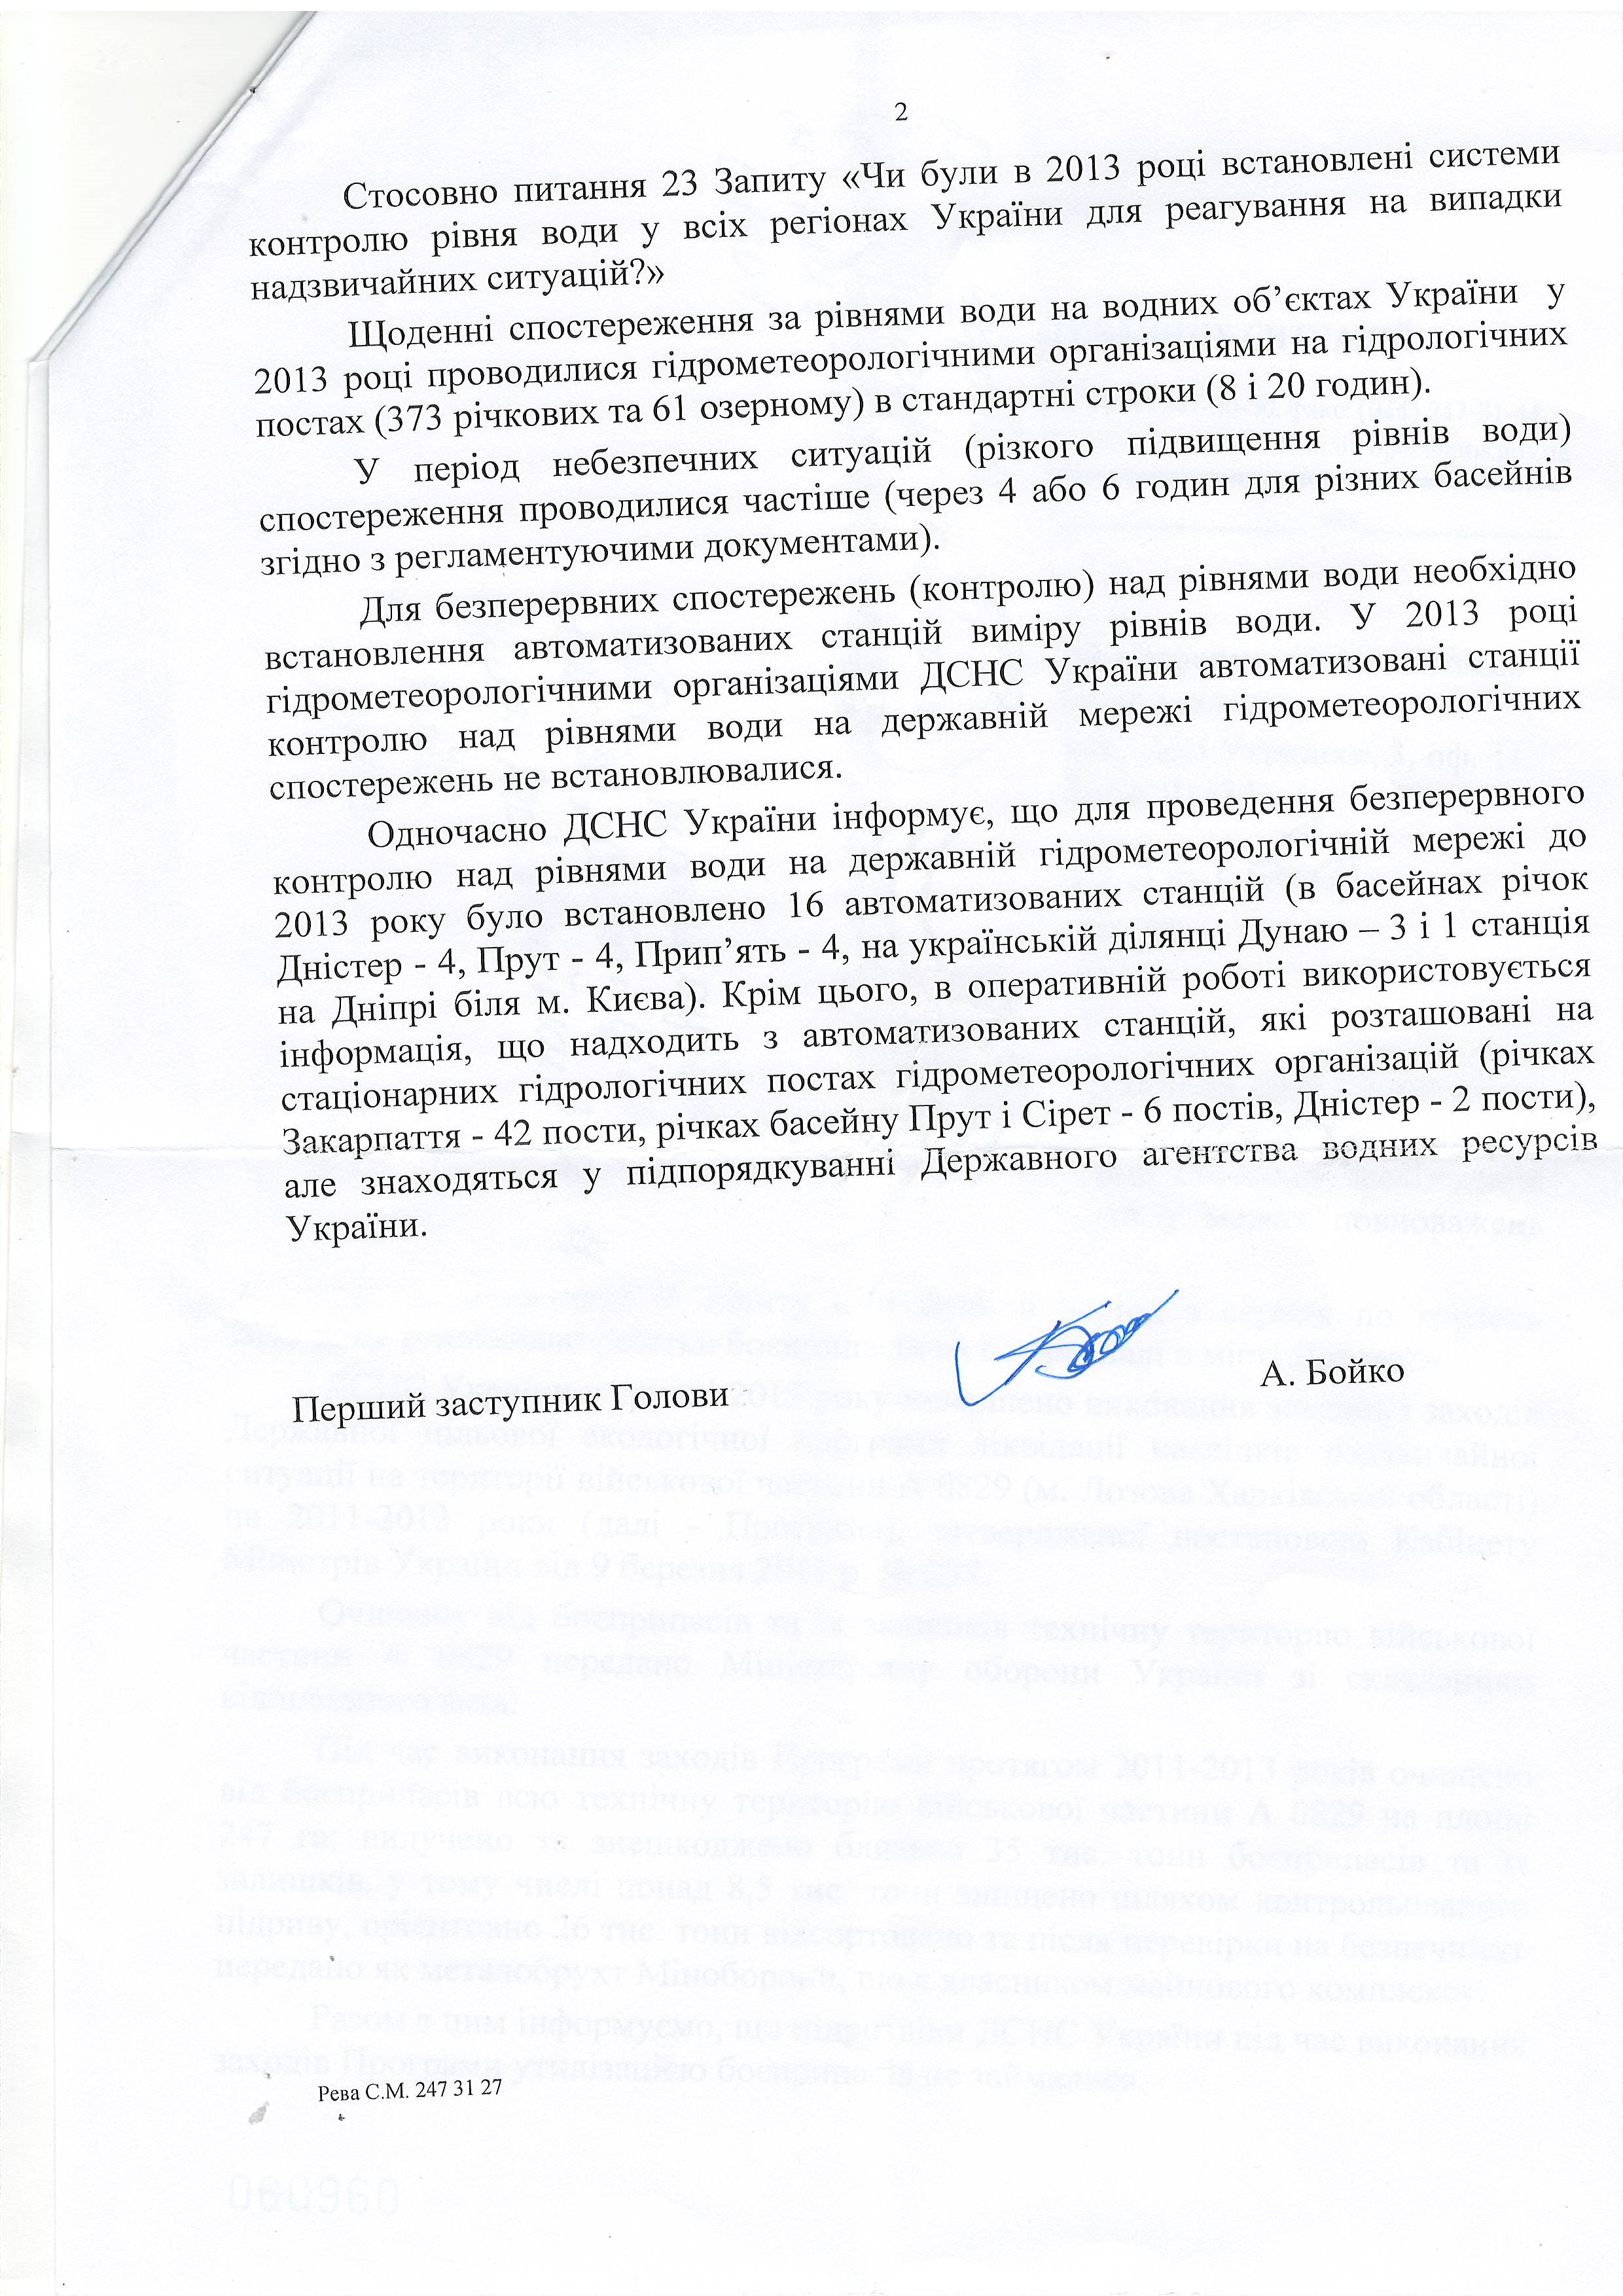 Лист Державної служби України з надзвичайних ситуацій від 4 квітня 2015 року